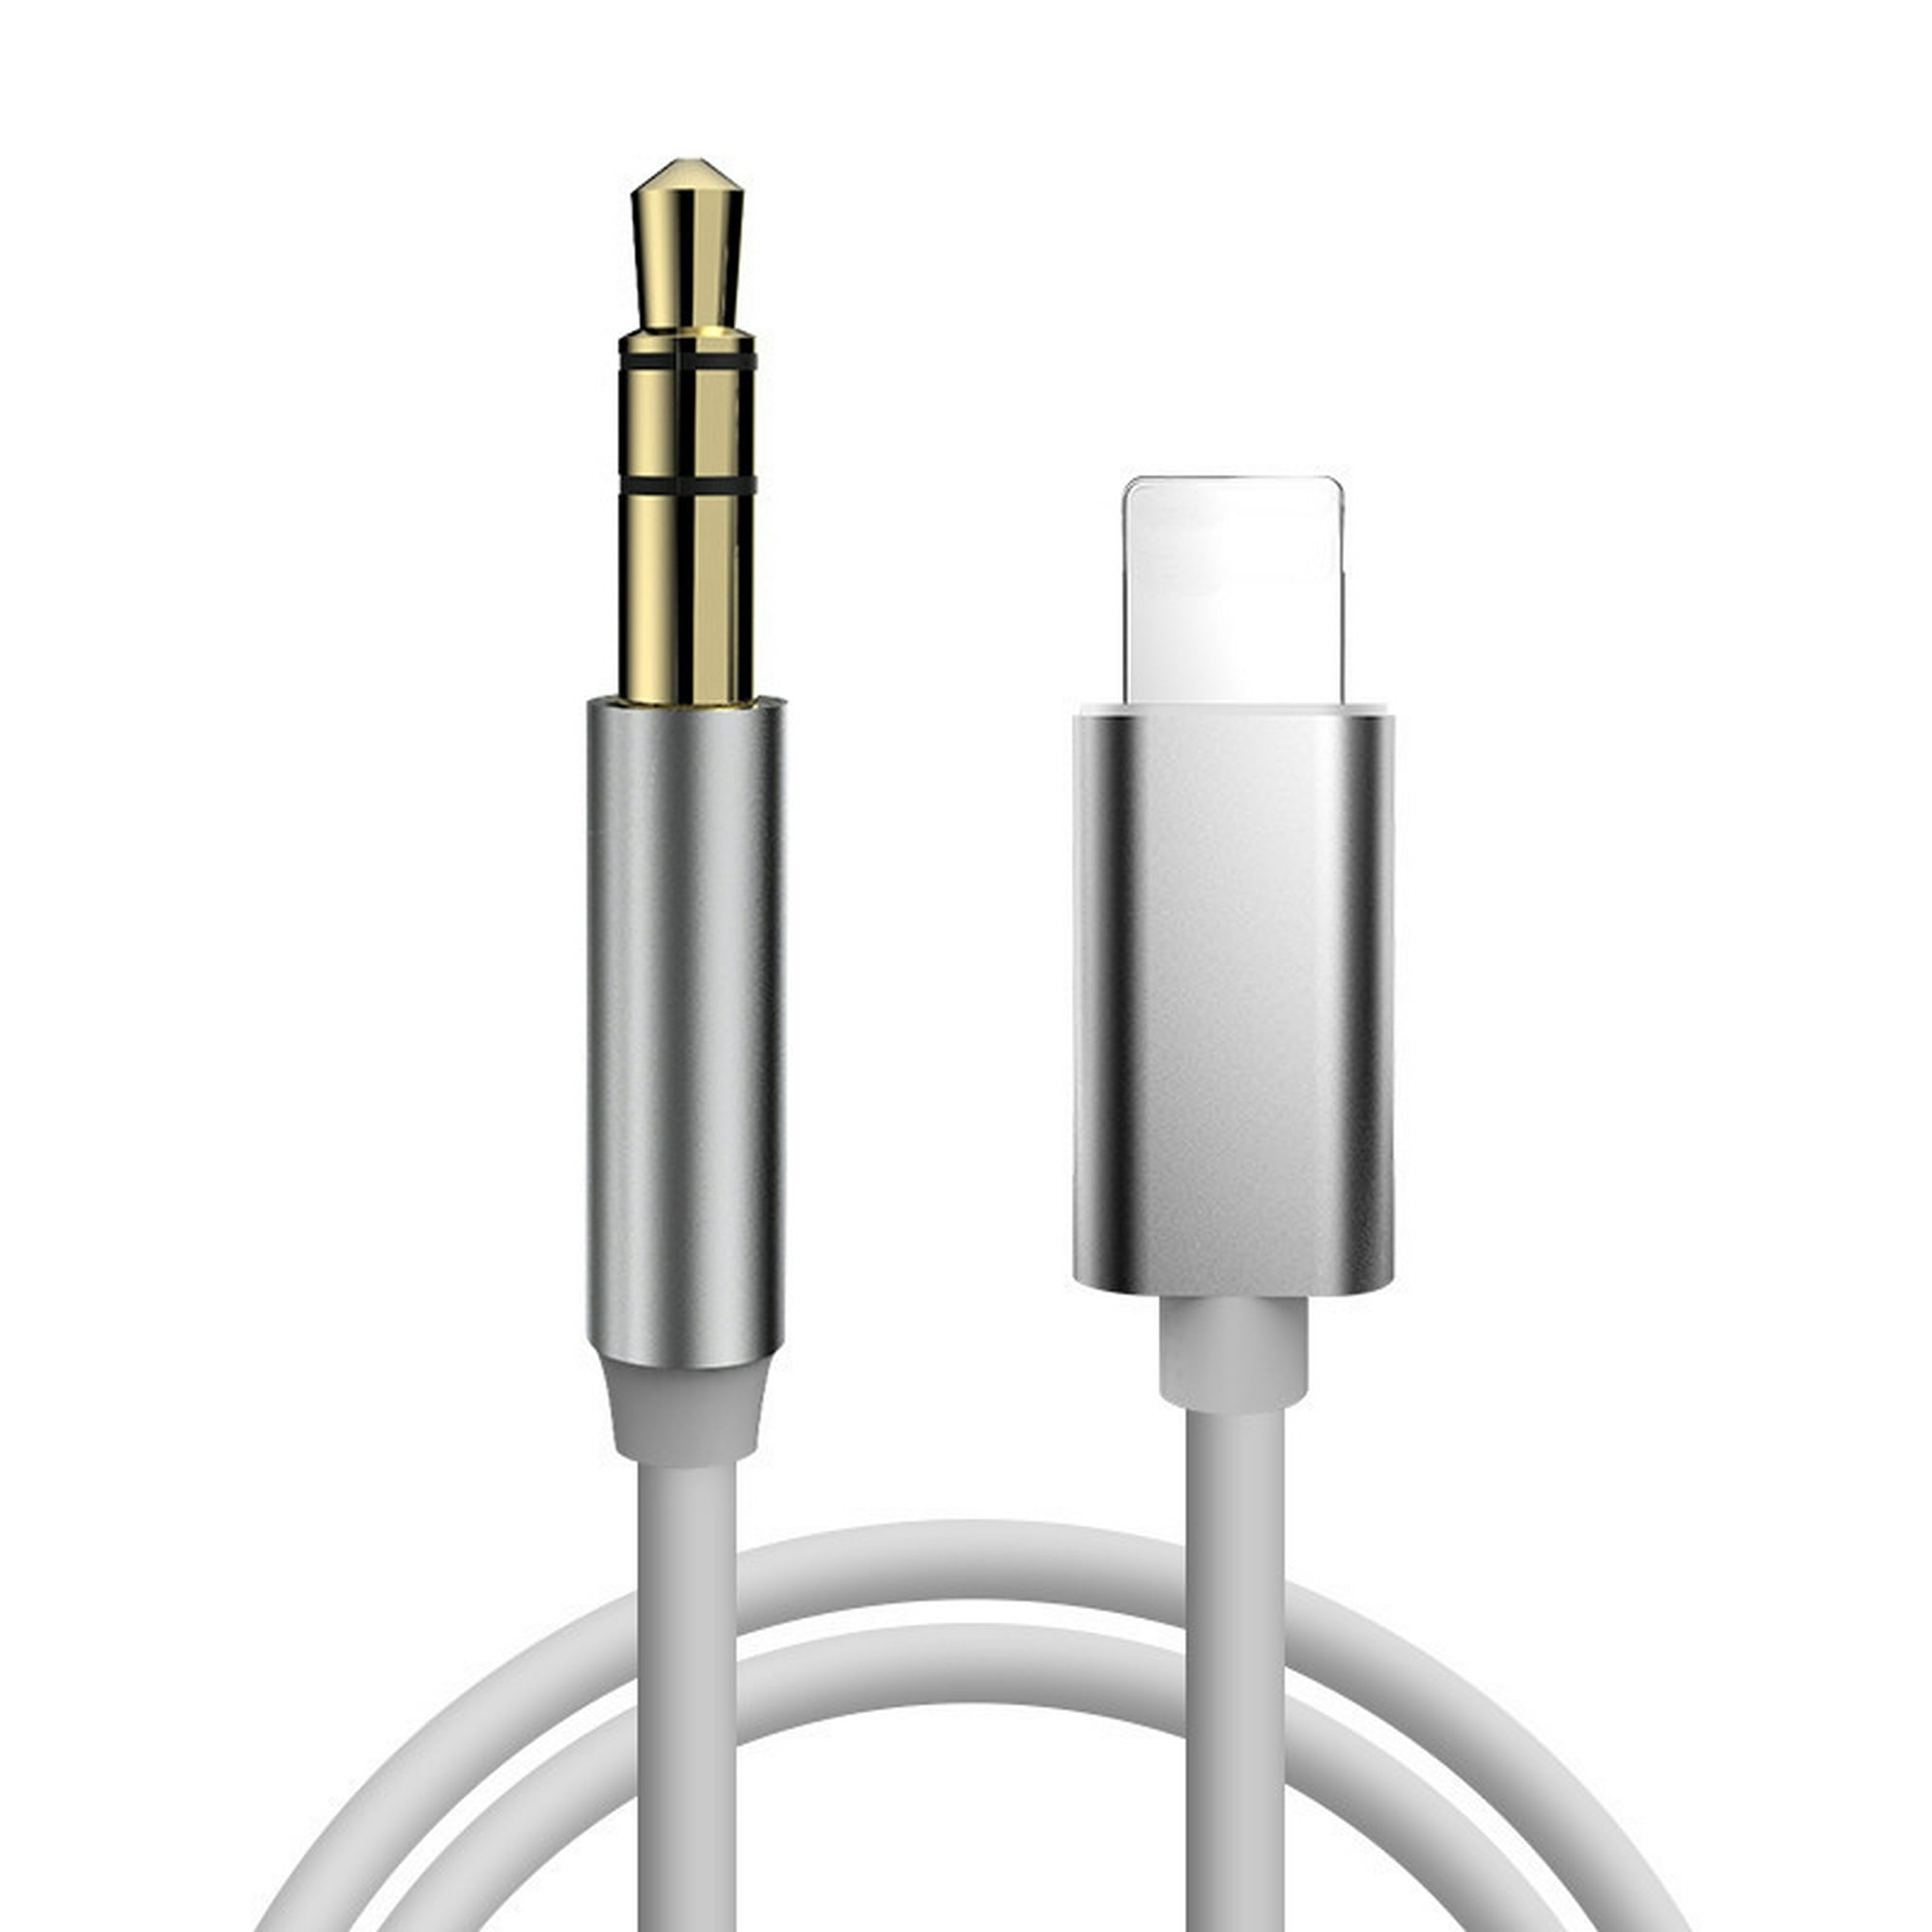 Cable Auxiliar para iPhone - Portátil Shop